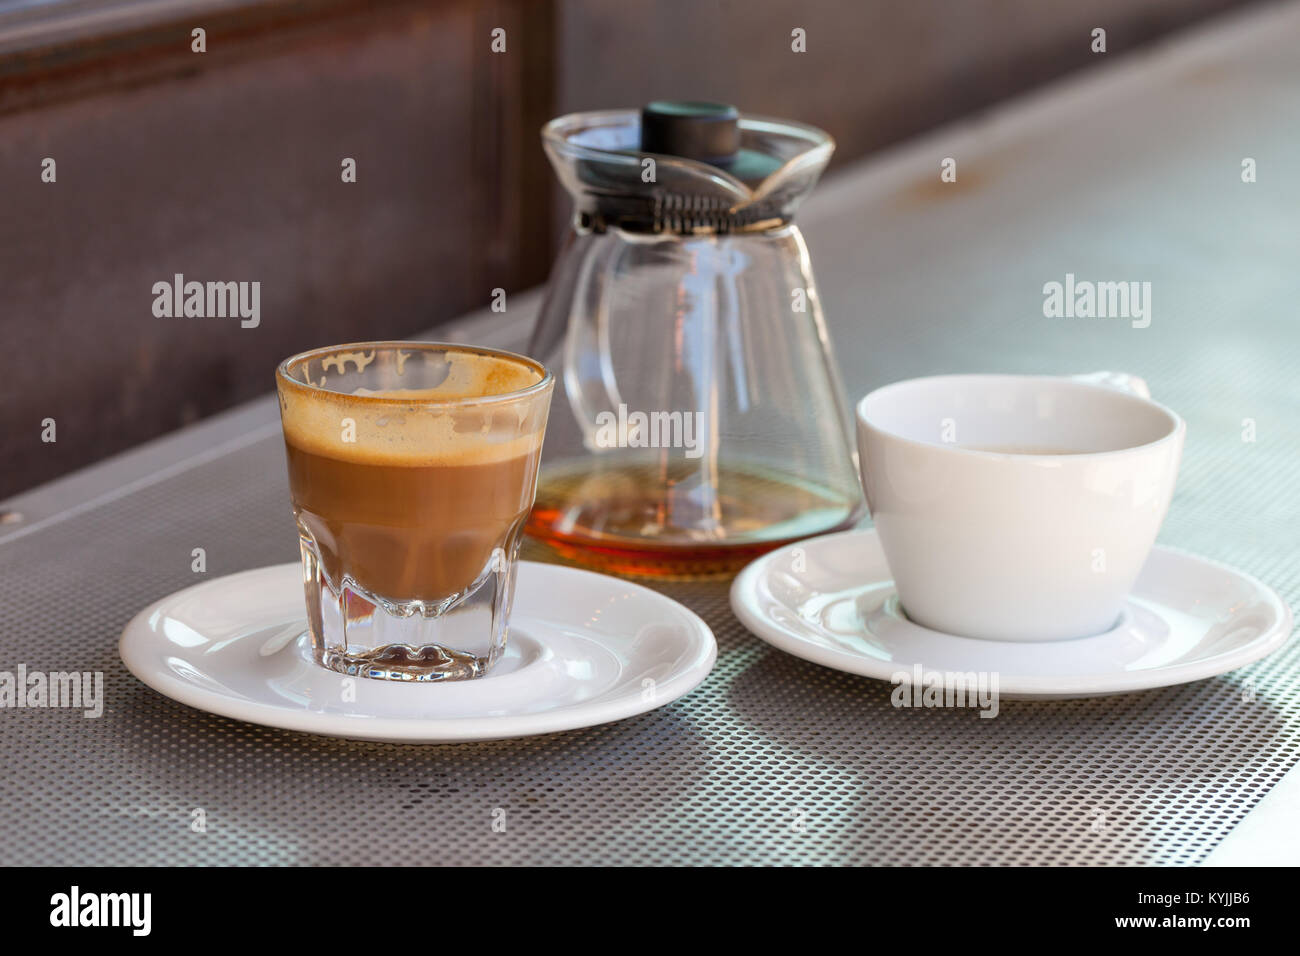 Verbrauchte cortado Kaffee in ein Glas mit Keramik weiße Tasse und Kännchen auf metallischen Tabelle und eine rostige Hintergrund Stockfoto